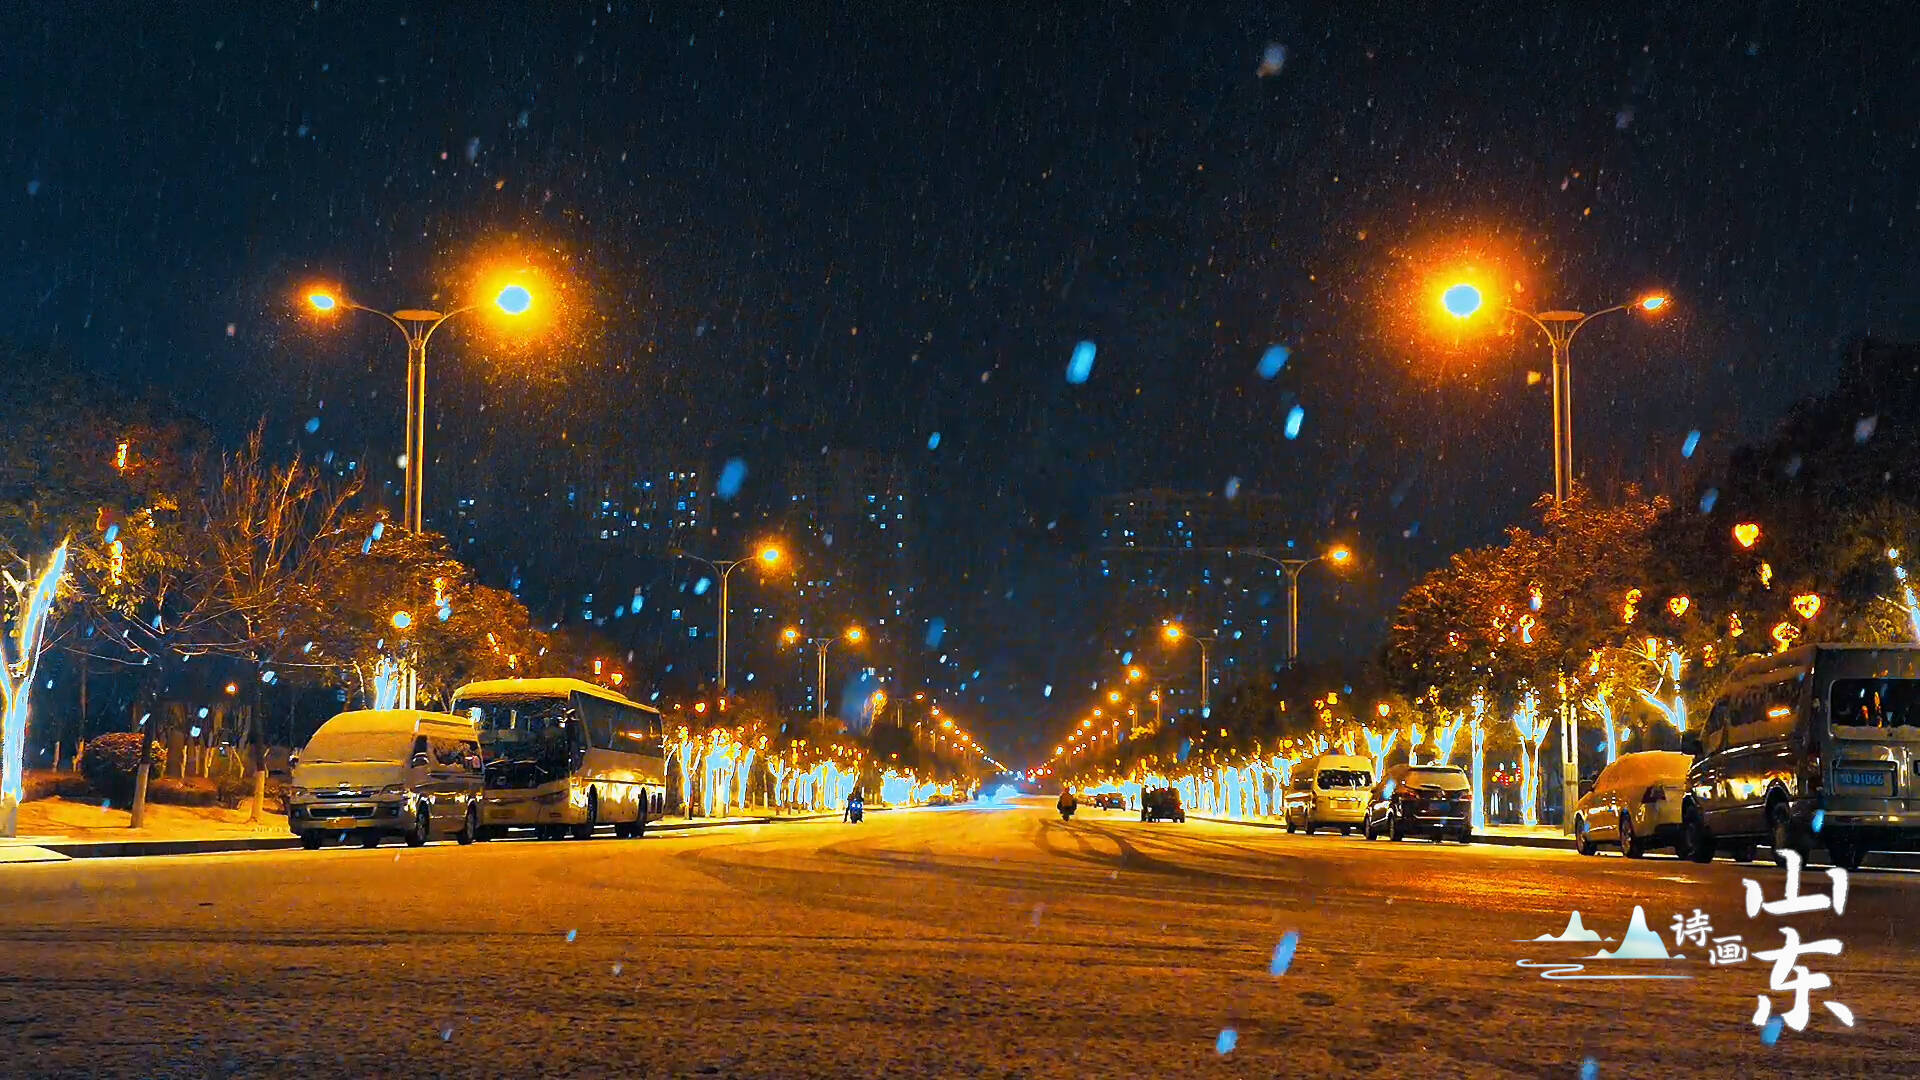 傍晚雪景 最美图片